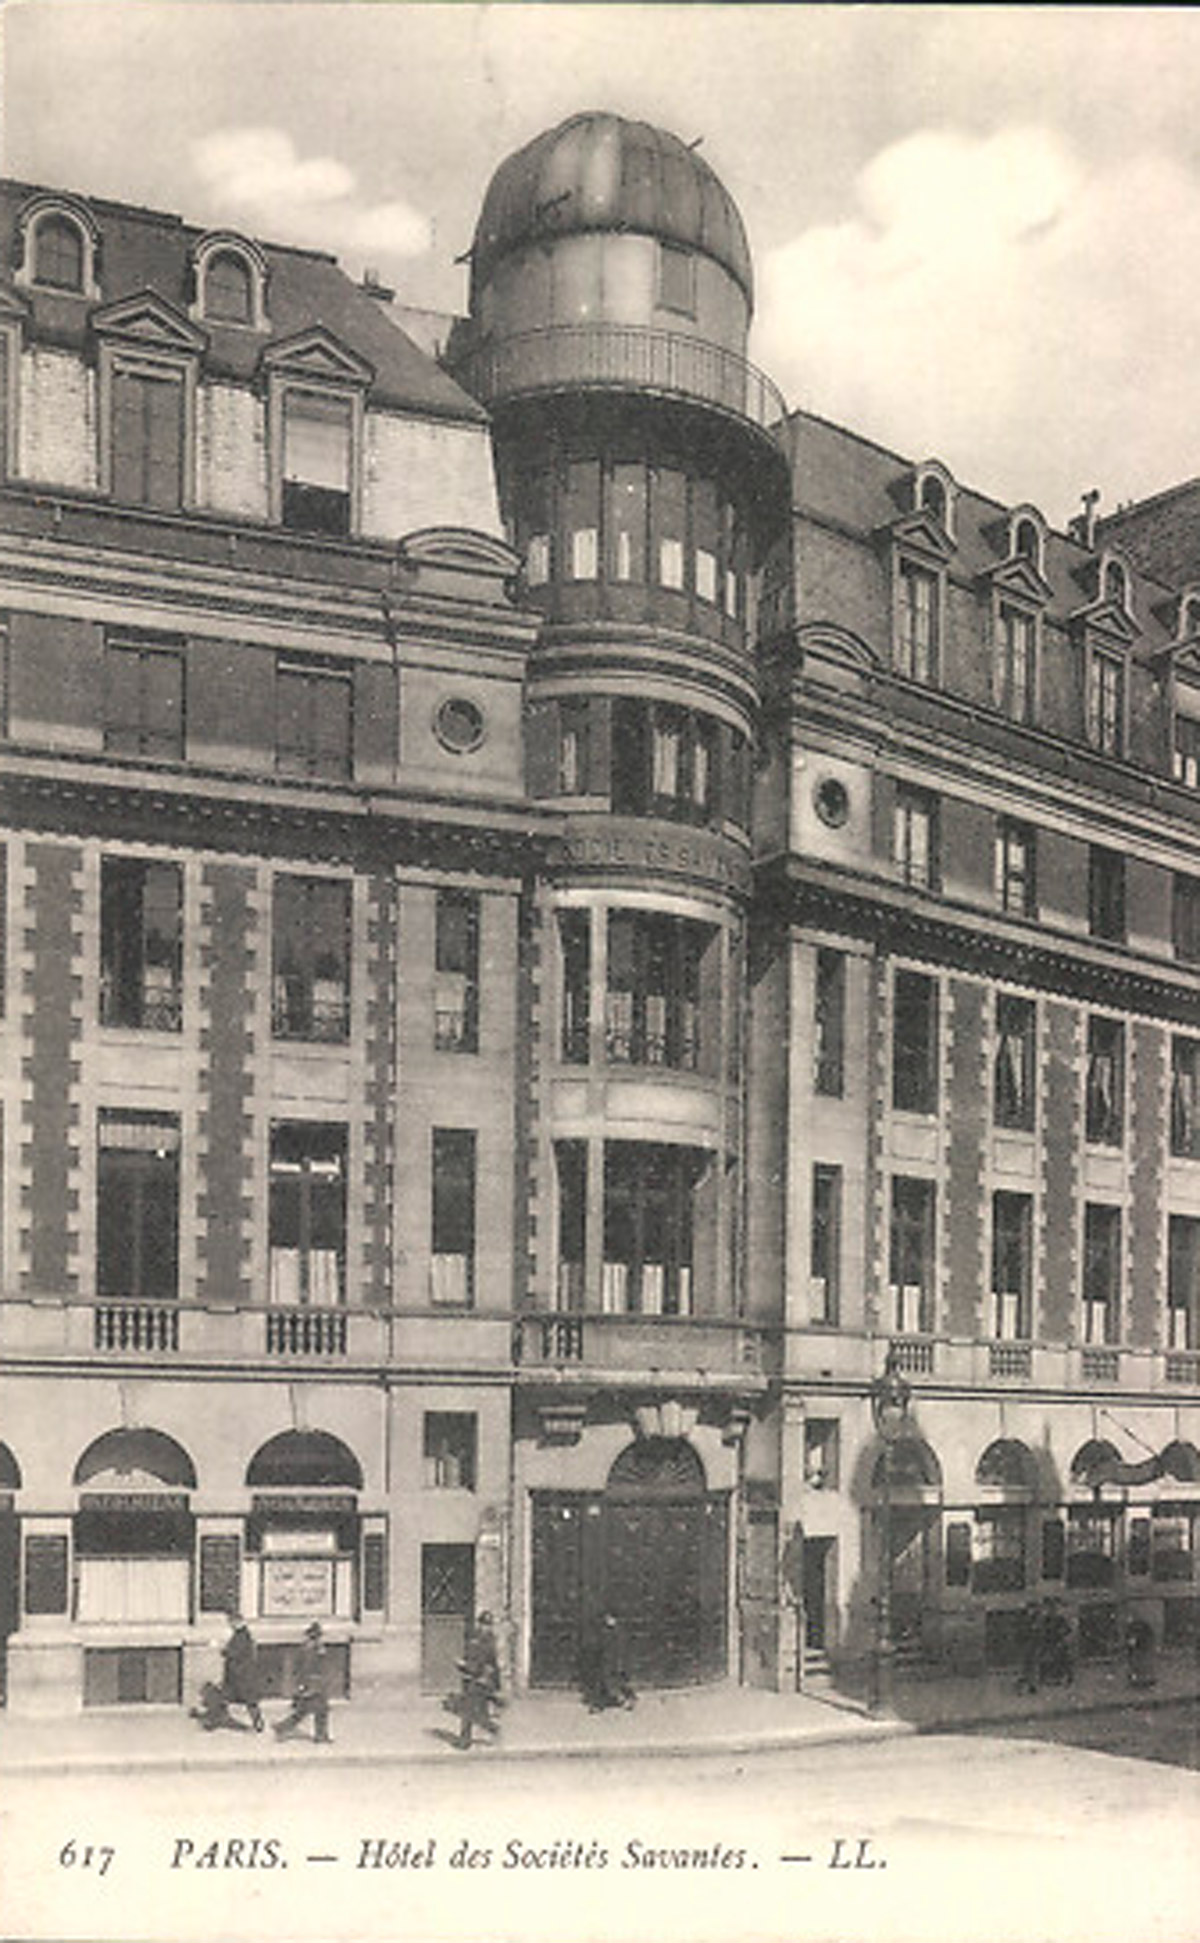 Paris - Hôtel des sociétés savantes, carte postale, s.d.